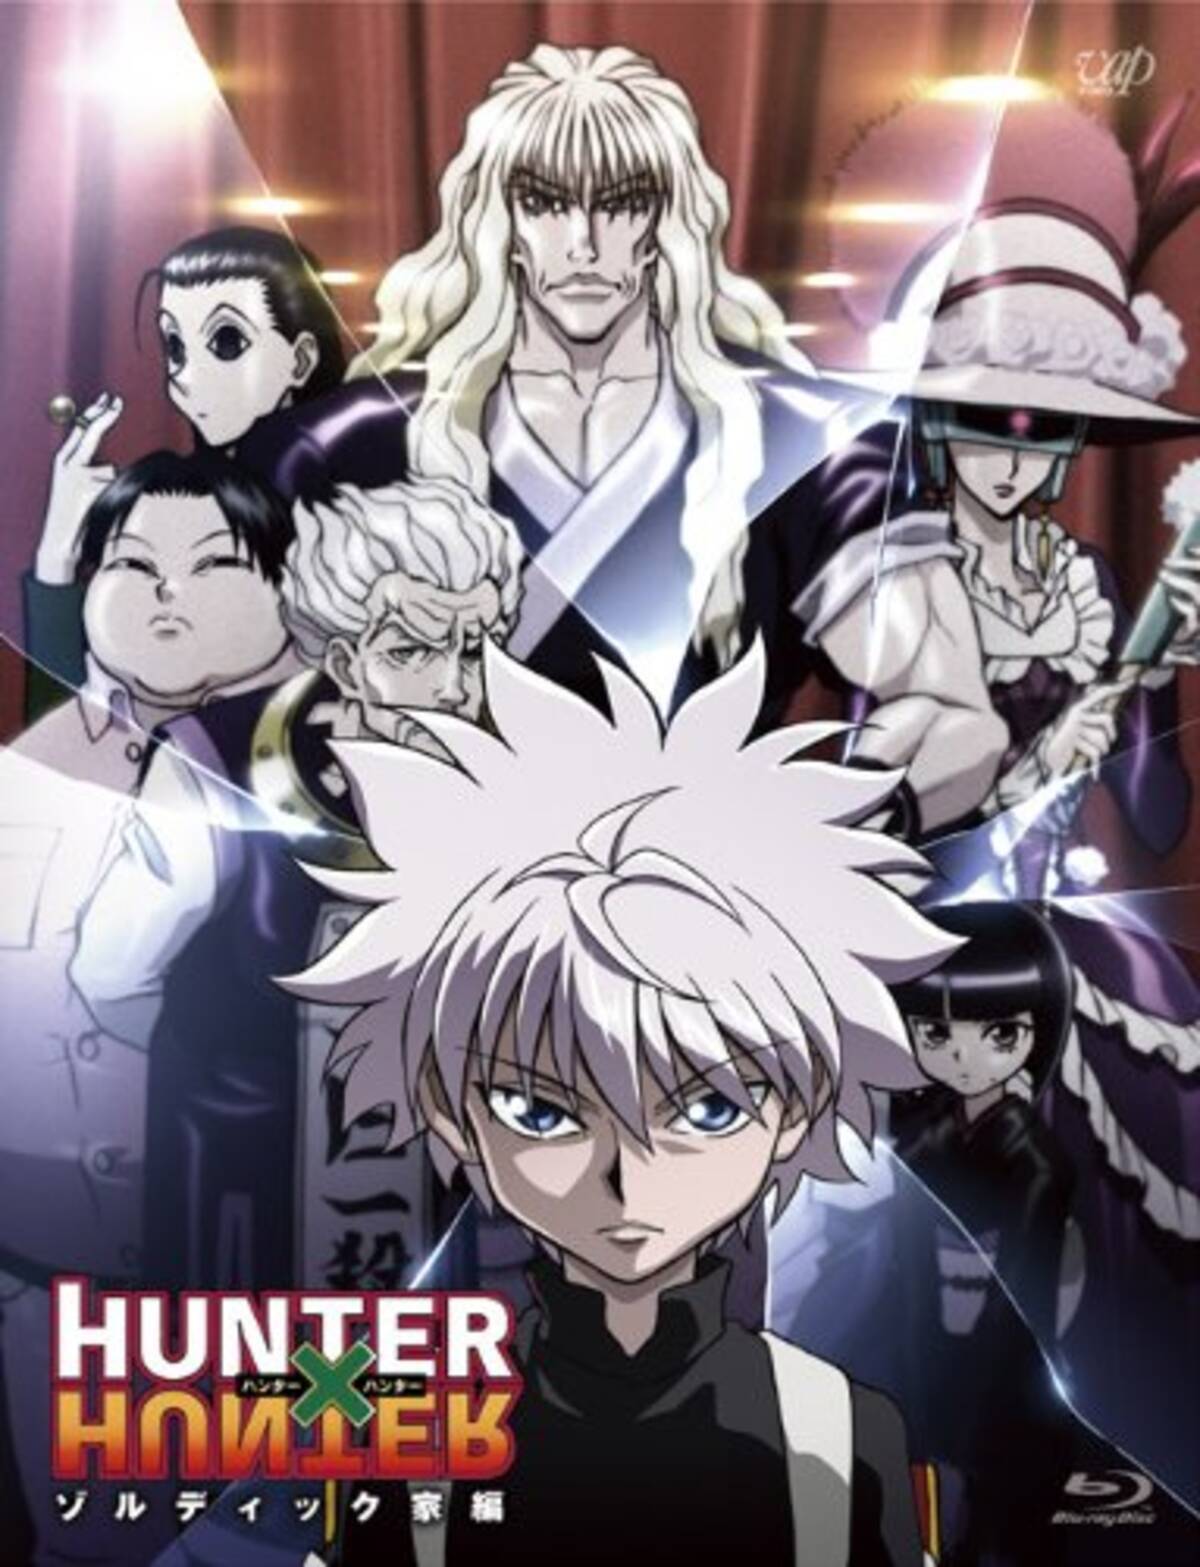 アニメキャラの魅力 暗殺一家ゾルディック家の三男坊 キルア ゾルディック とは Hunter Hunter 14年11月27日 エキサイトニュース 3 3